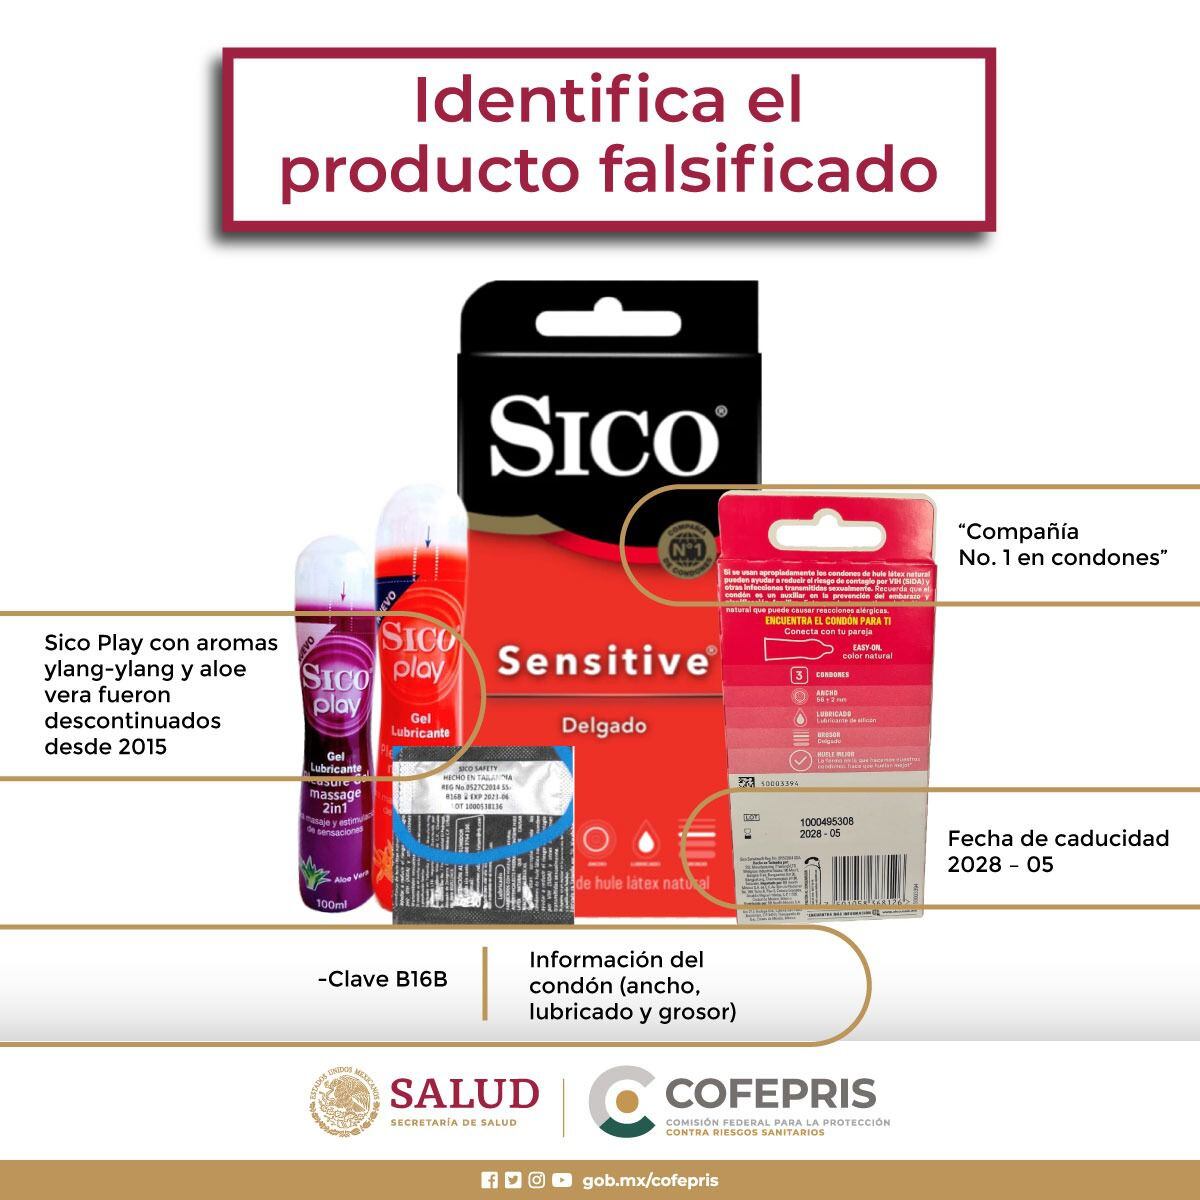 Estas son las características de los condones Sico apócrifos. (Foto: Cofepris)